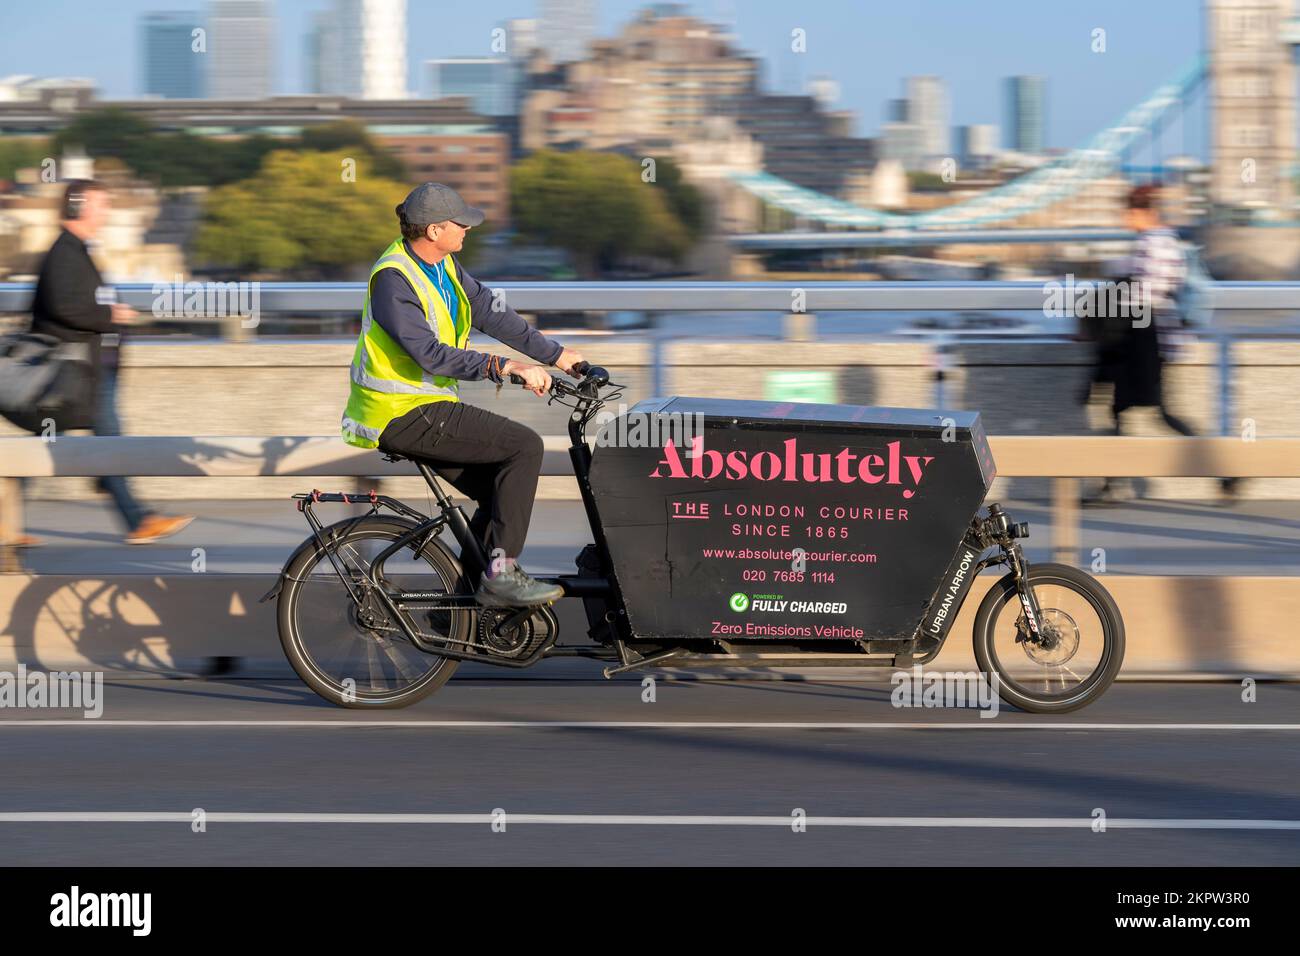 Bike couriers immagini e fotografie stock ad alta risoluzione - Alamy